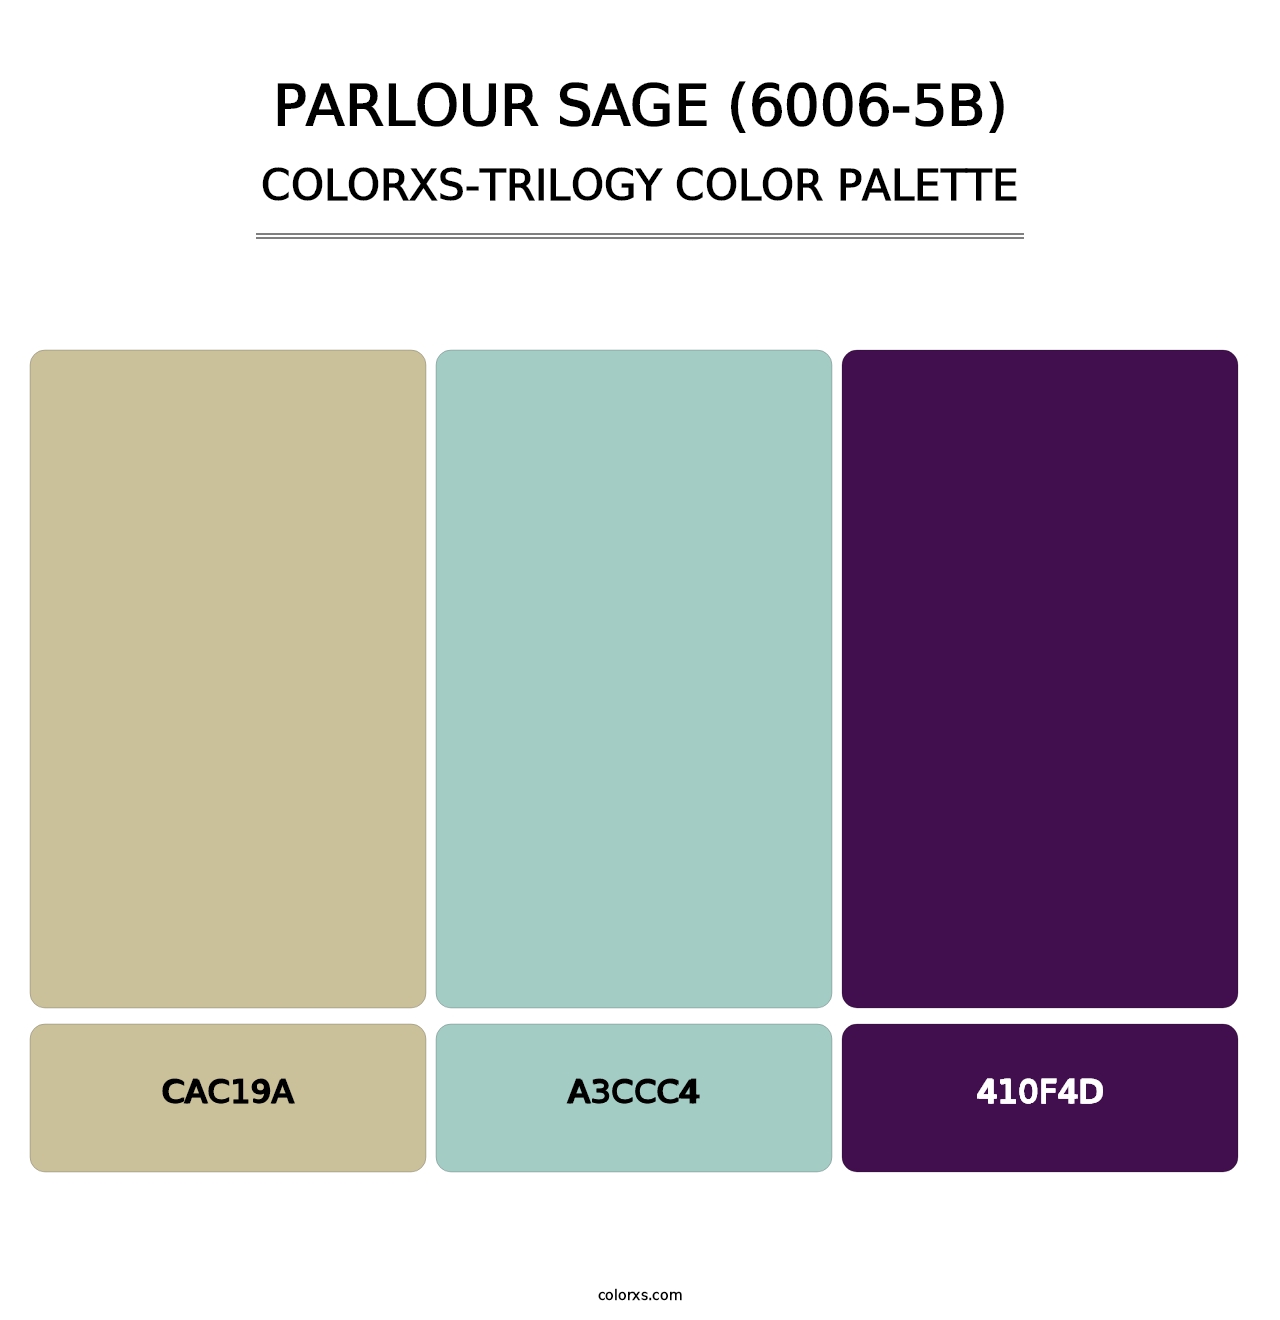 Parlour Sage (6006-5B) - Colorxs Trilogy Palette